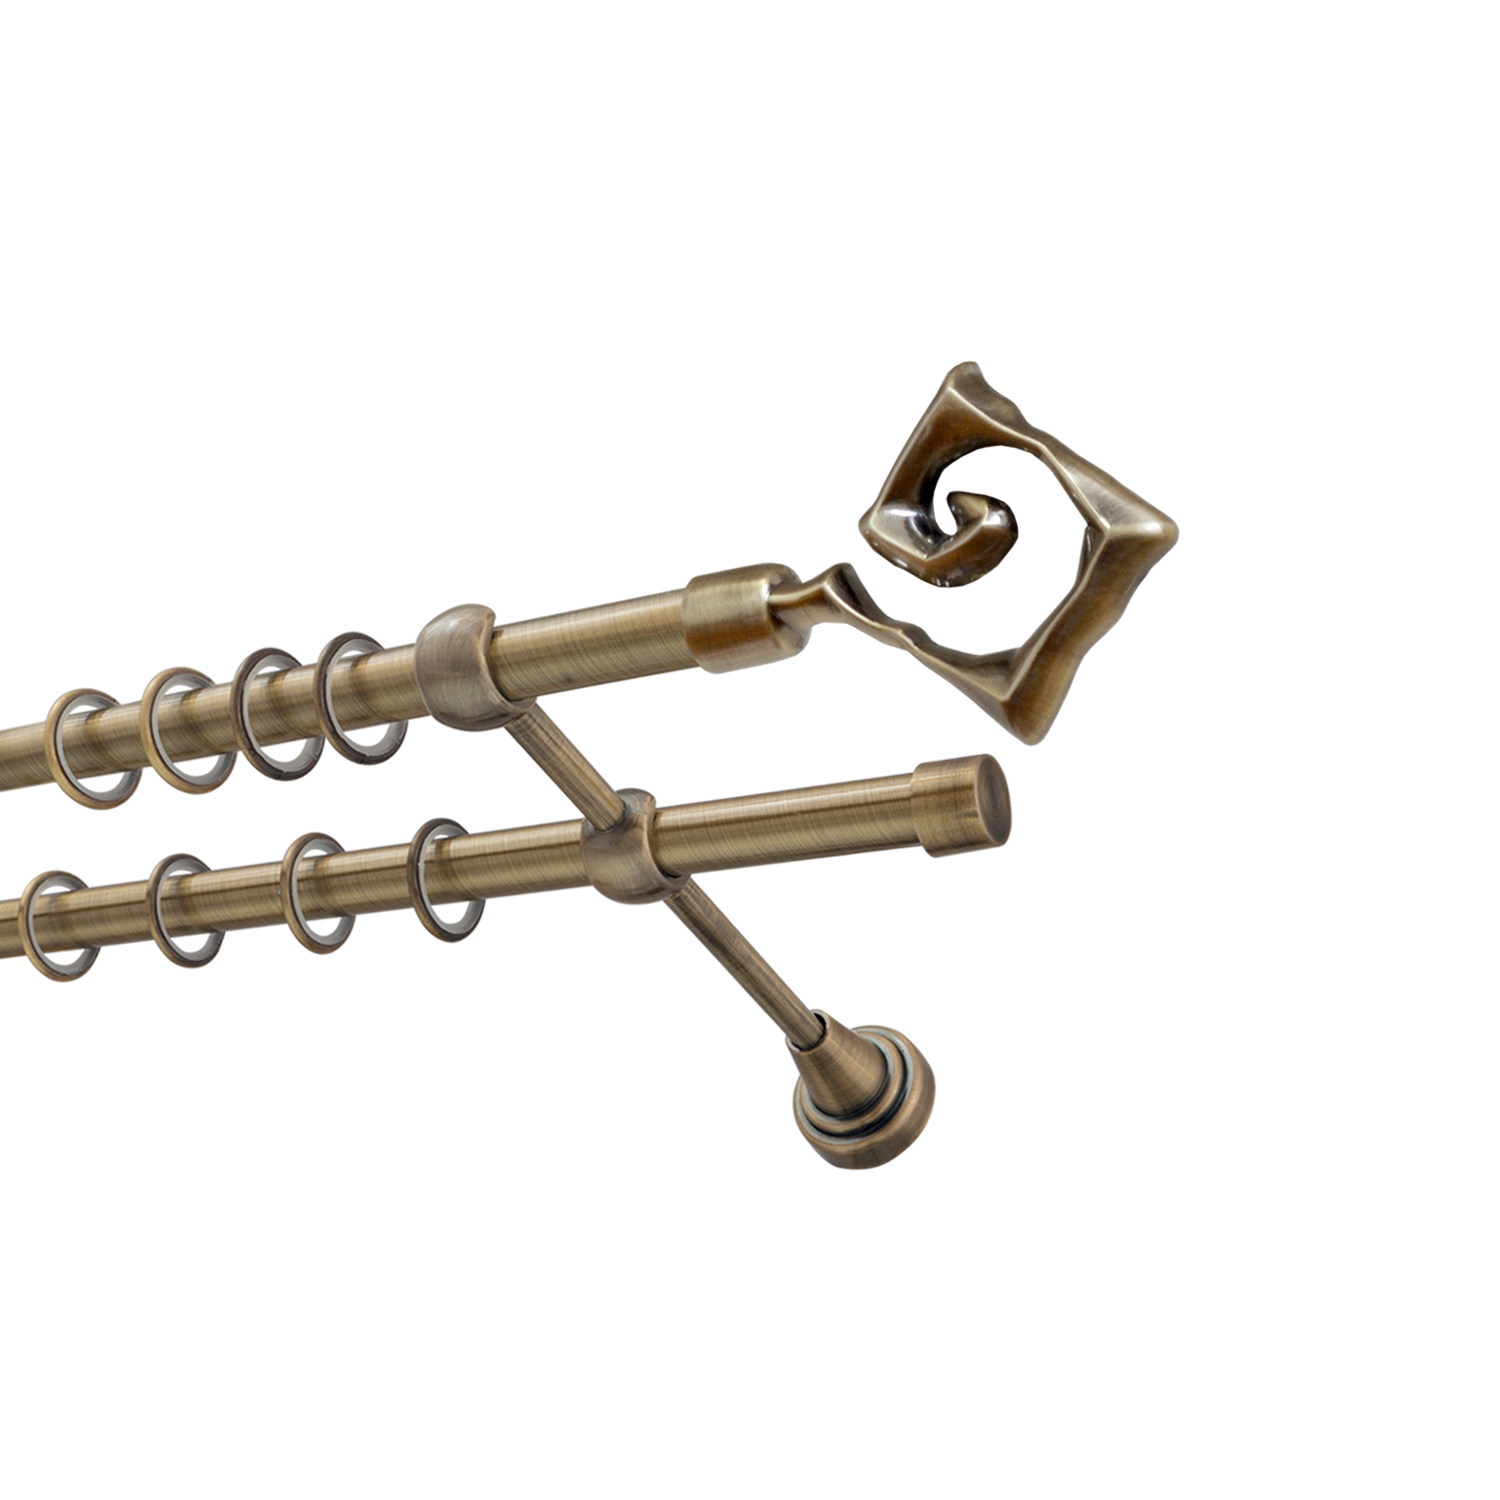 Металлический карниз для штор Крокус, двухрядный 16/16 мм, бронза, гладкая штанга, длина 180 см - фото Wikidecor.ru